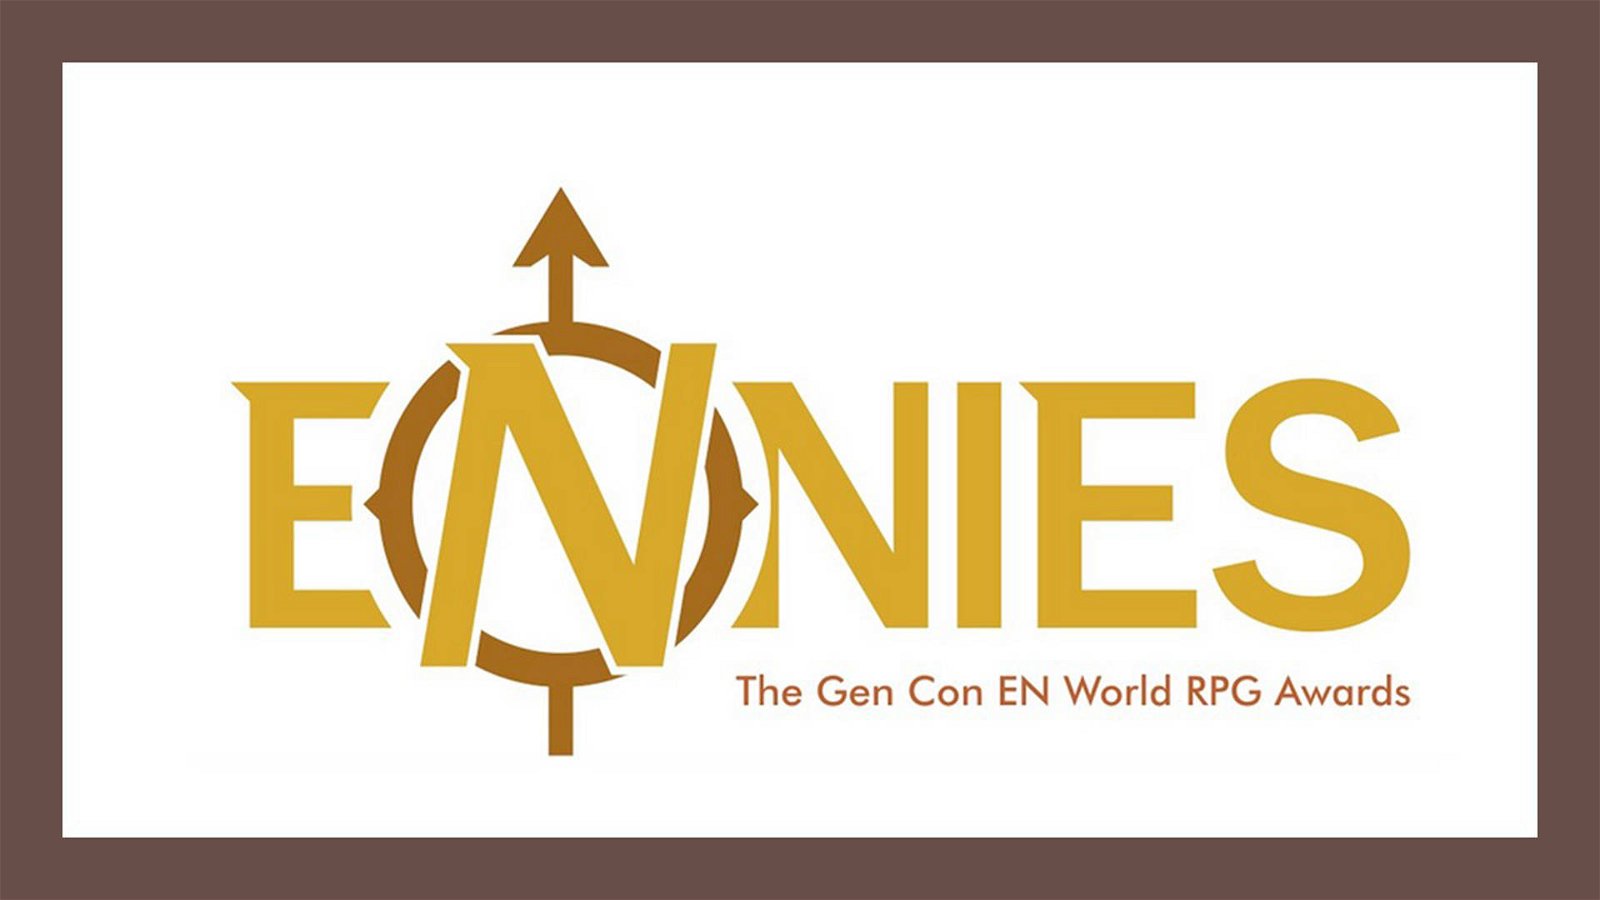 Immagine di Gen Con 2019, ENnie Awards: Chaosium Inc. e Il Richiamo di Cthulhu fanno incetta di premi